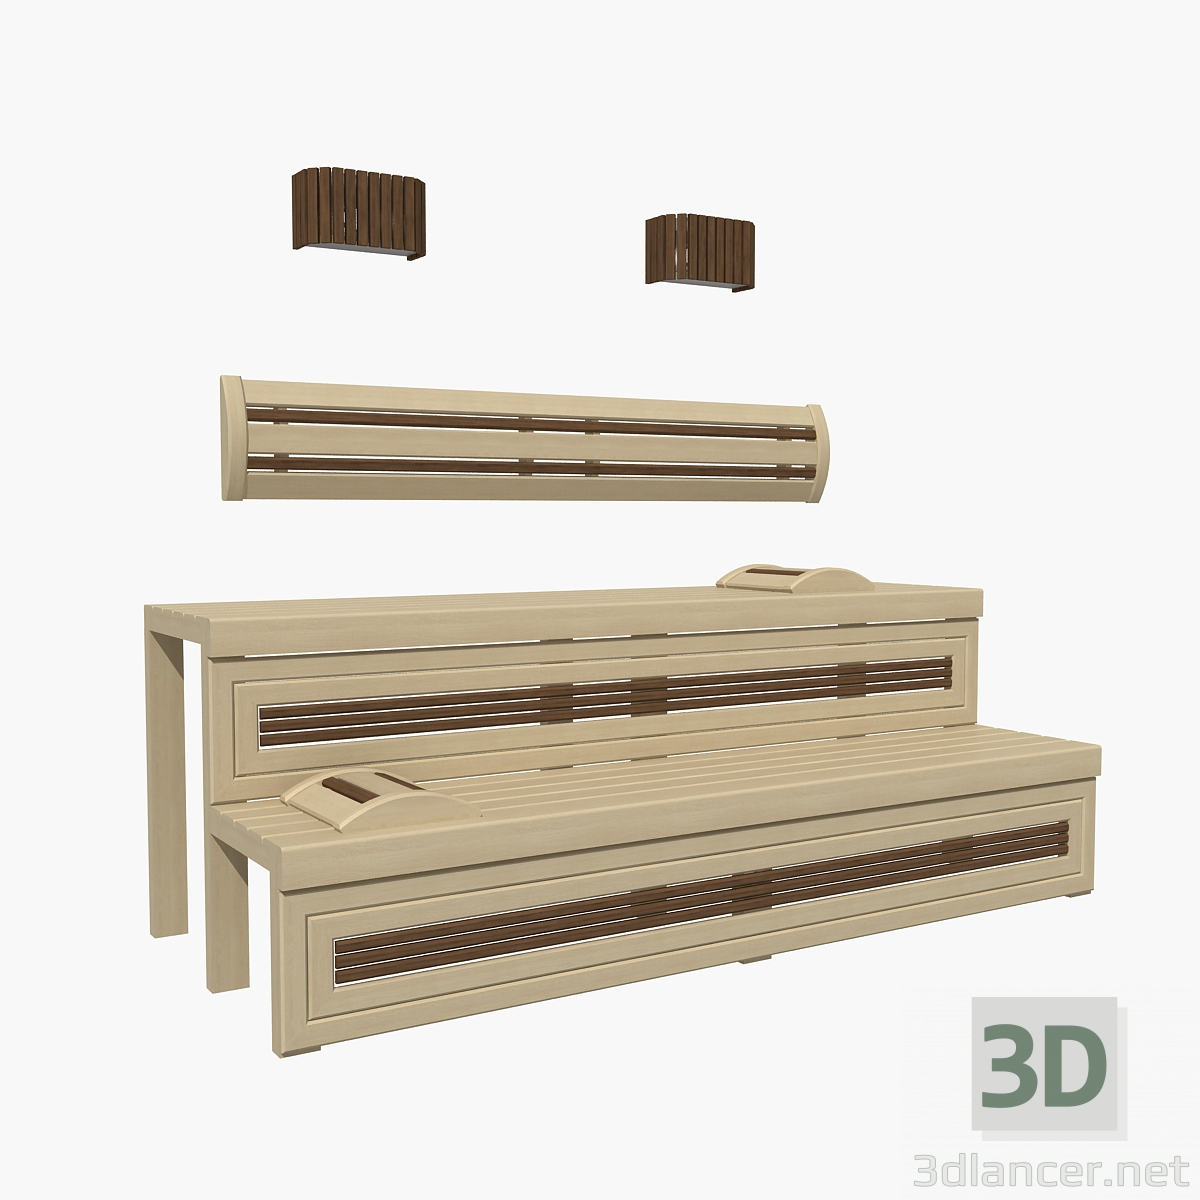 Saunabank 01 3D-Modell kaufen - Rendern